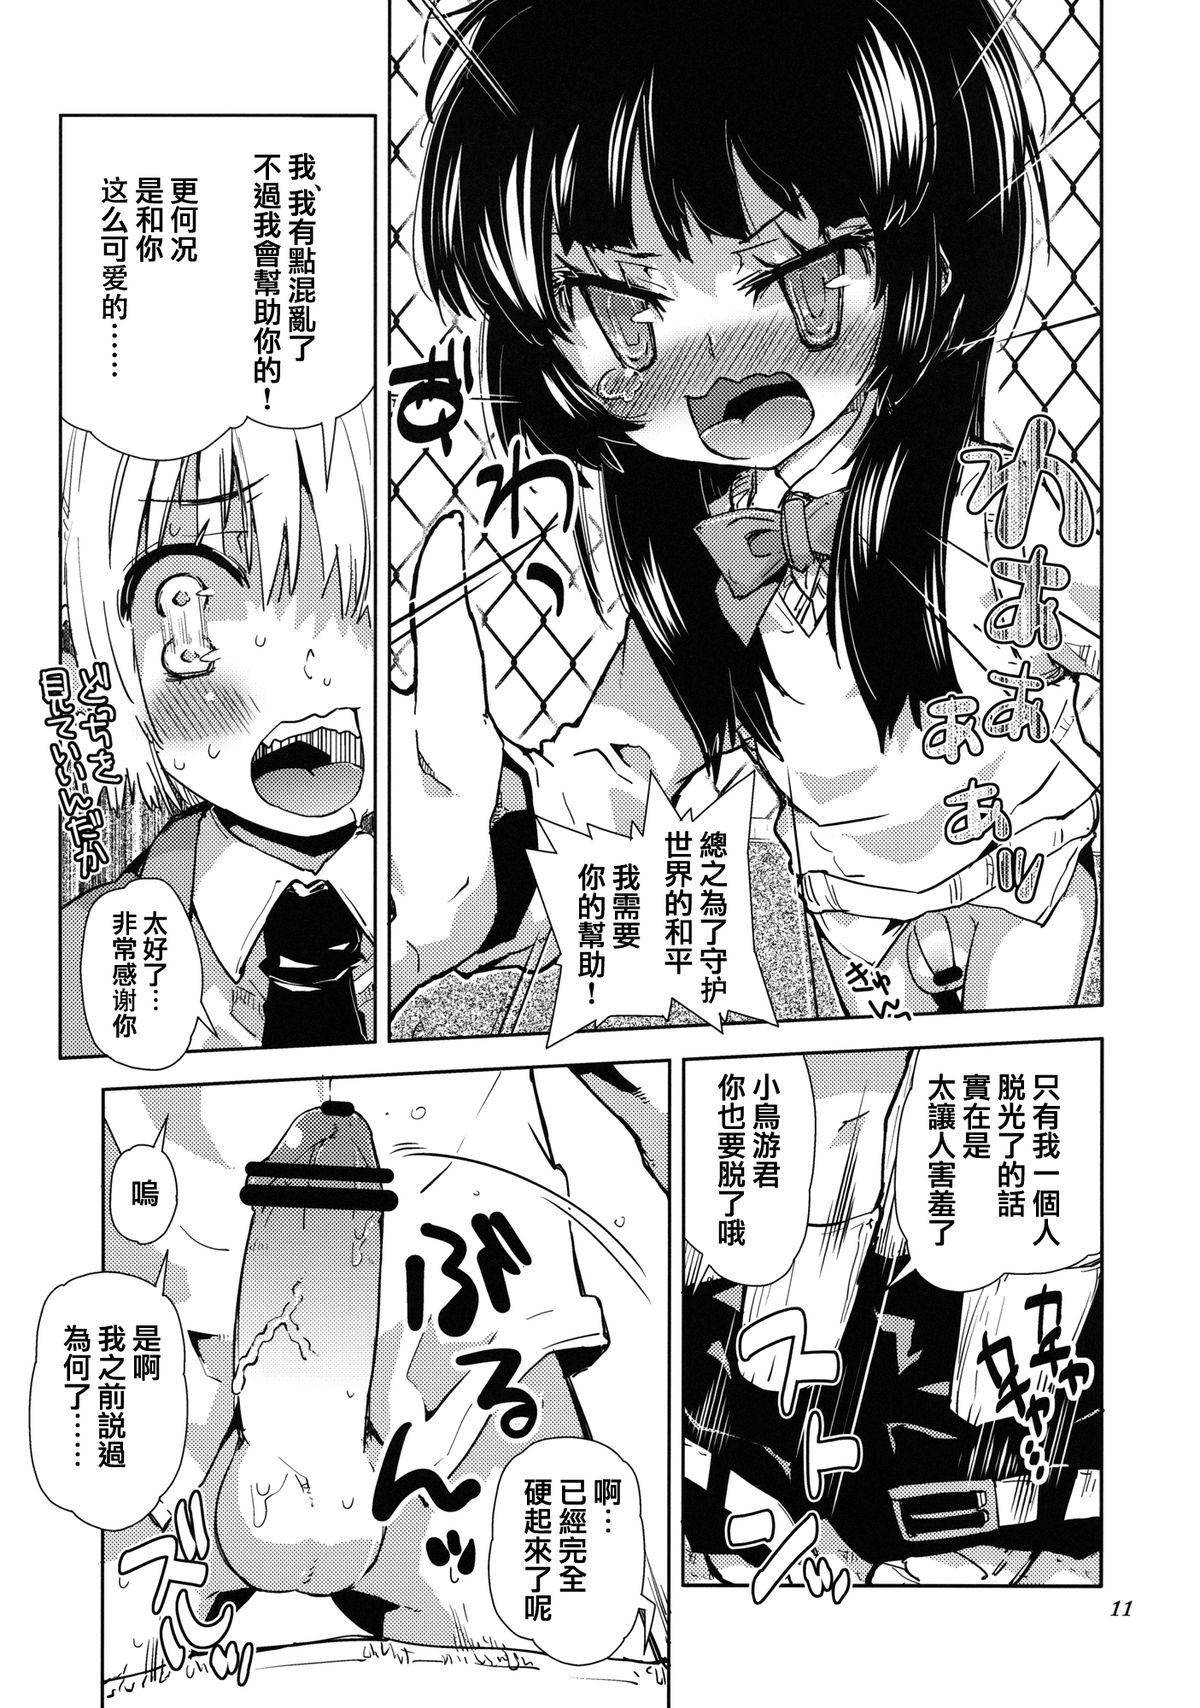 Hardcore Sekai ga Dou Toka itsu Chau Otoko no Musume wa Denpa Kawaii. Scene - Page 9